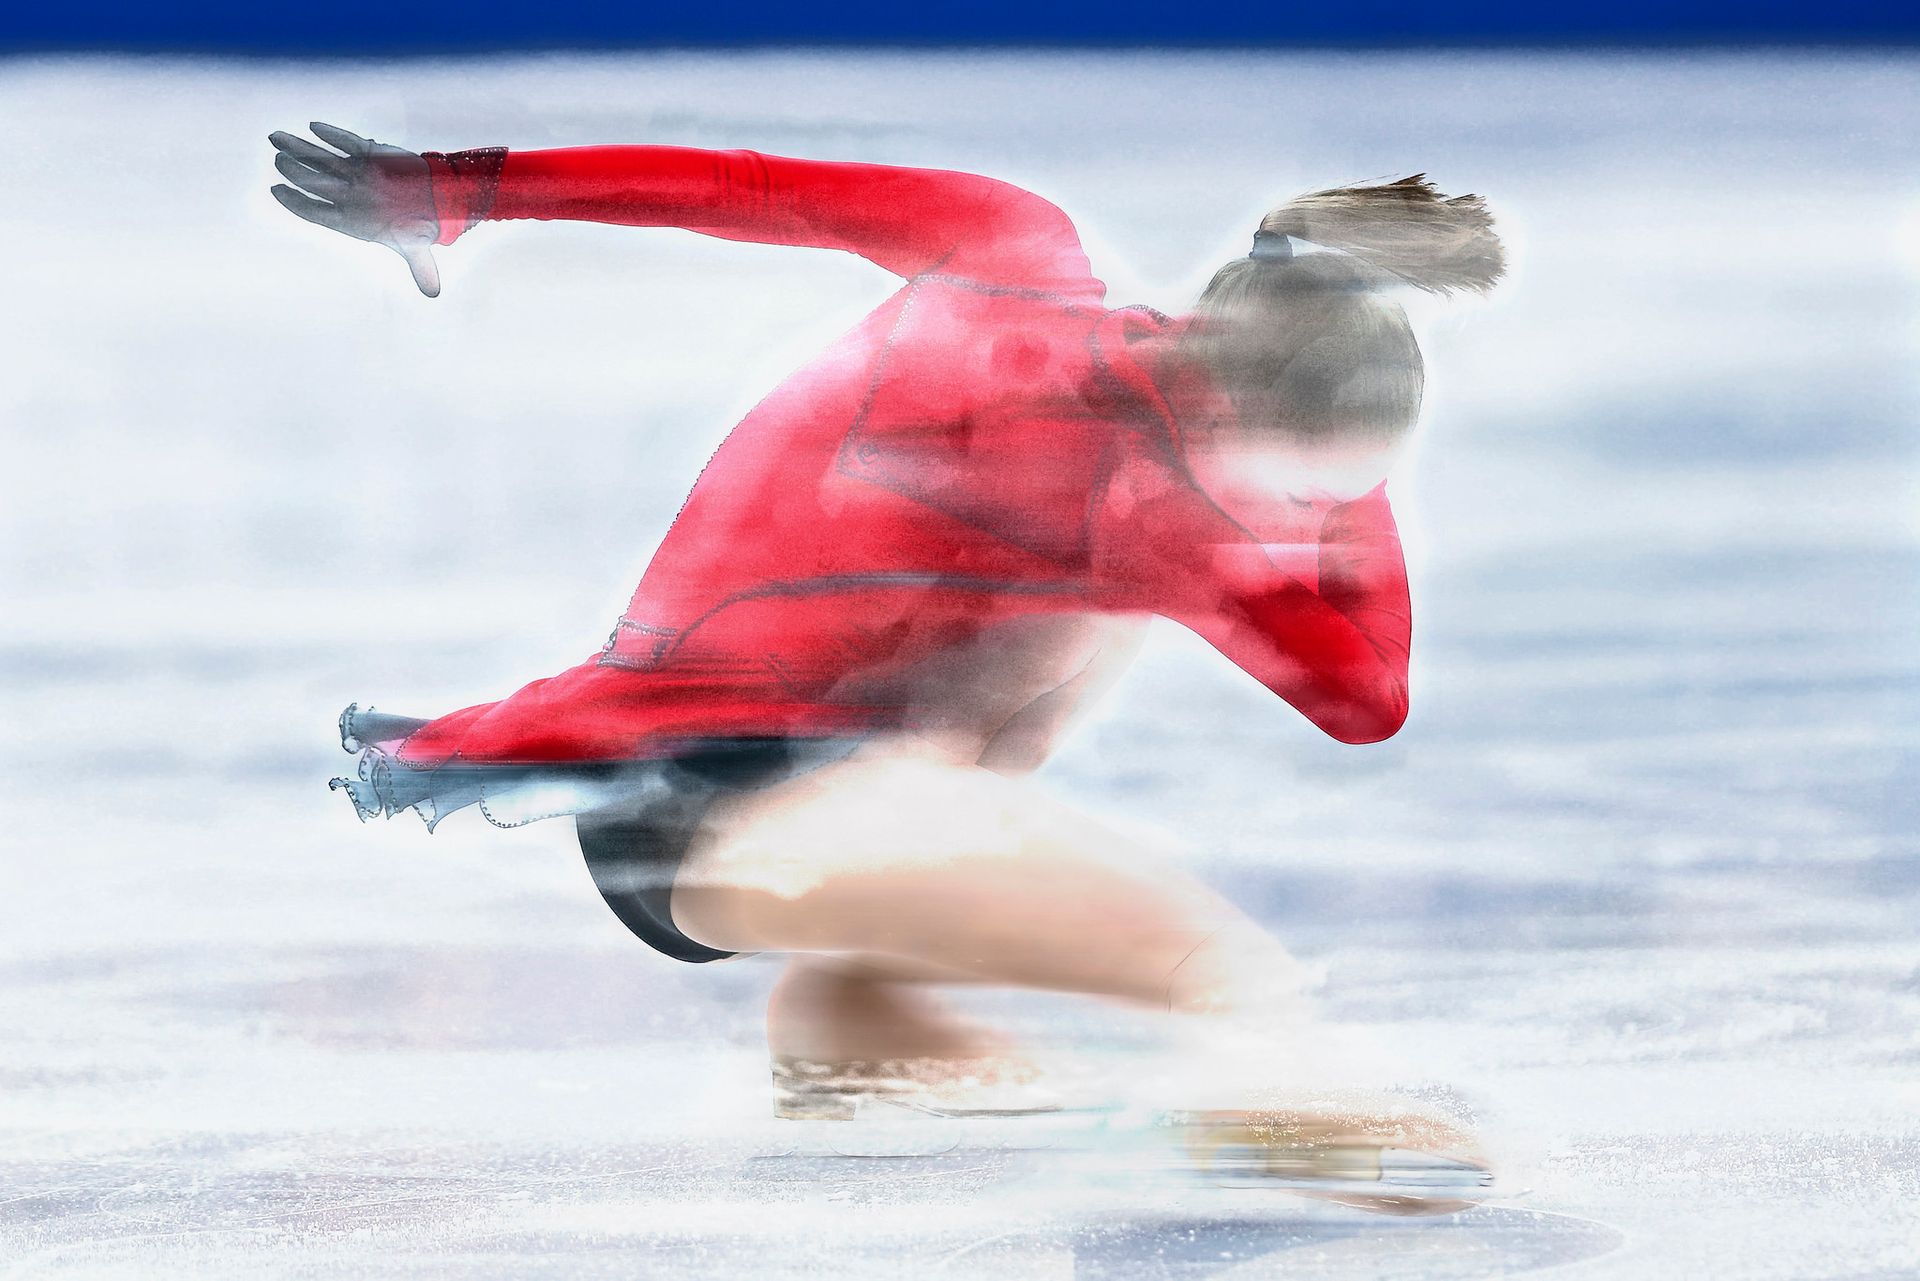 injecteren Leninisme diepte Rusland uitgesloten van deelname Olympische Winterspelen 2018 - Joop -  BNNVARA